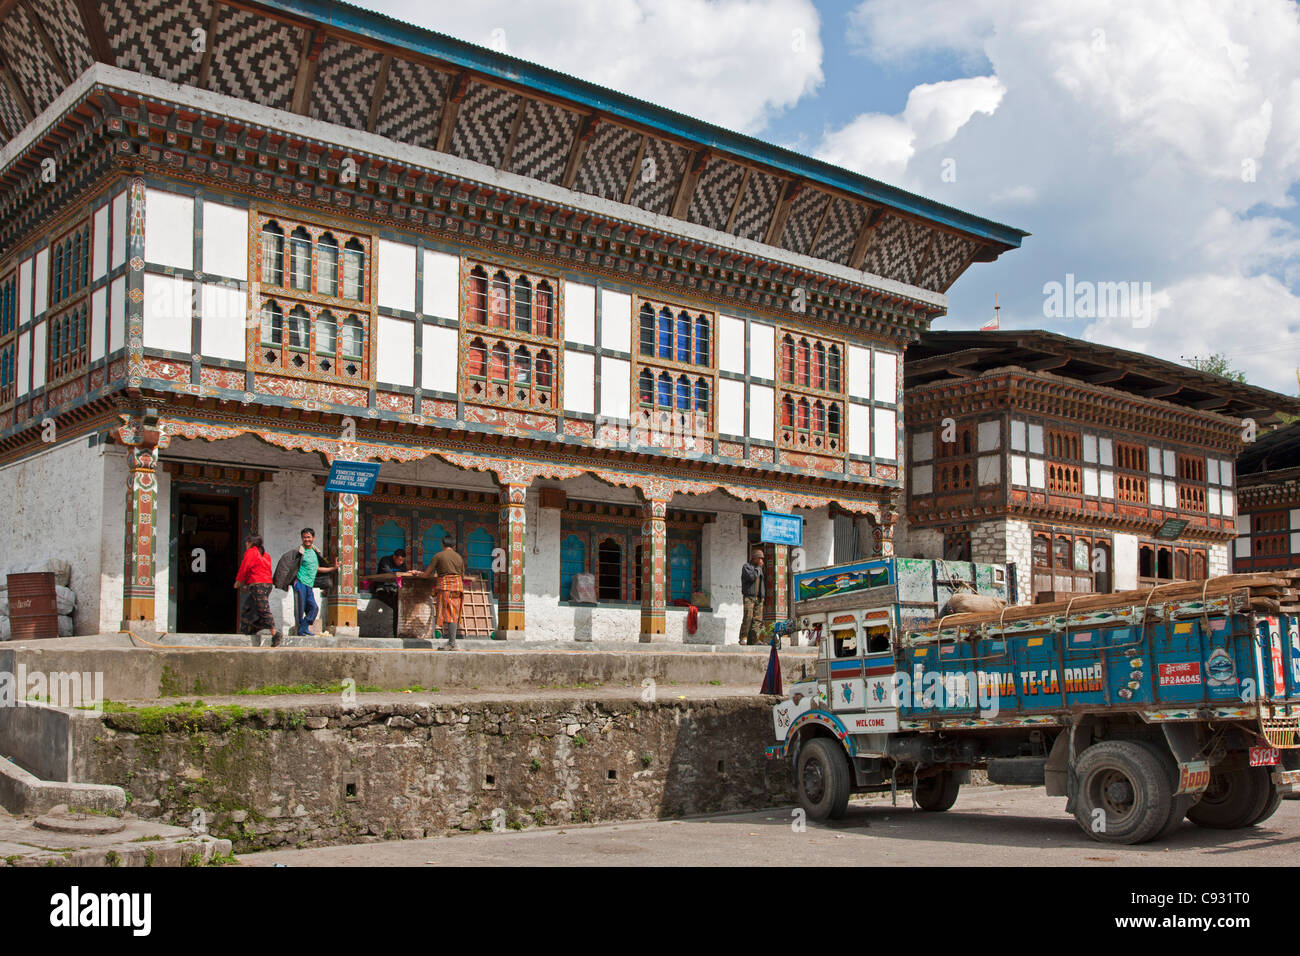 Le joli petit centre commercial de Trashi Yangtse construit dans le style architectural bhoutanais. Banque D'Images